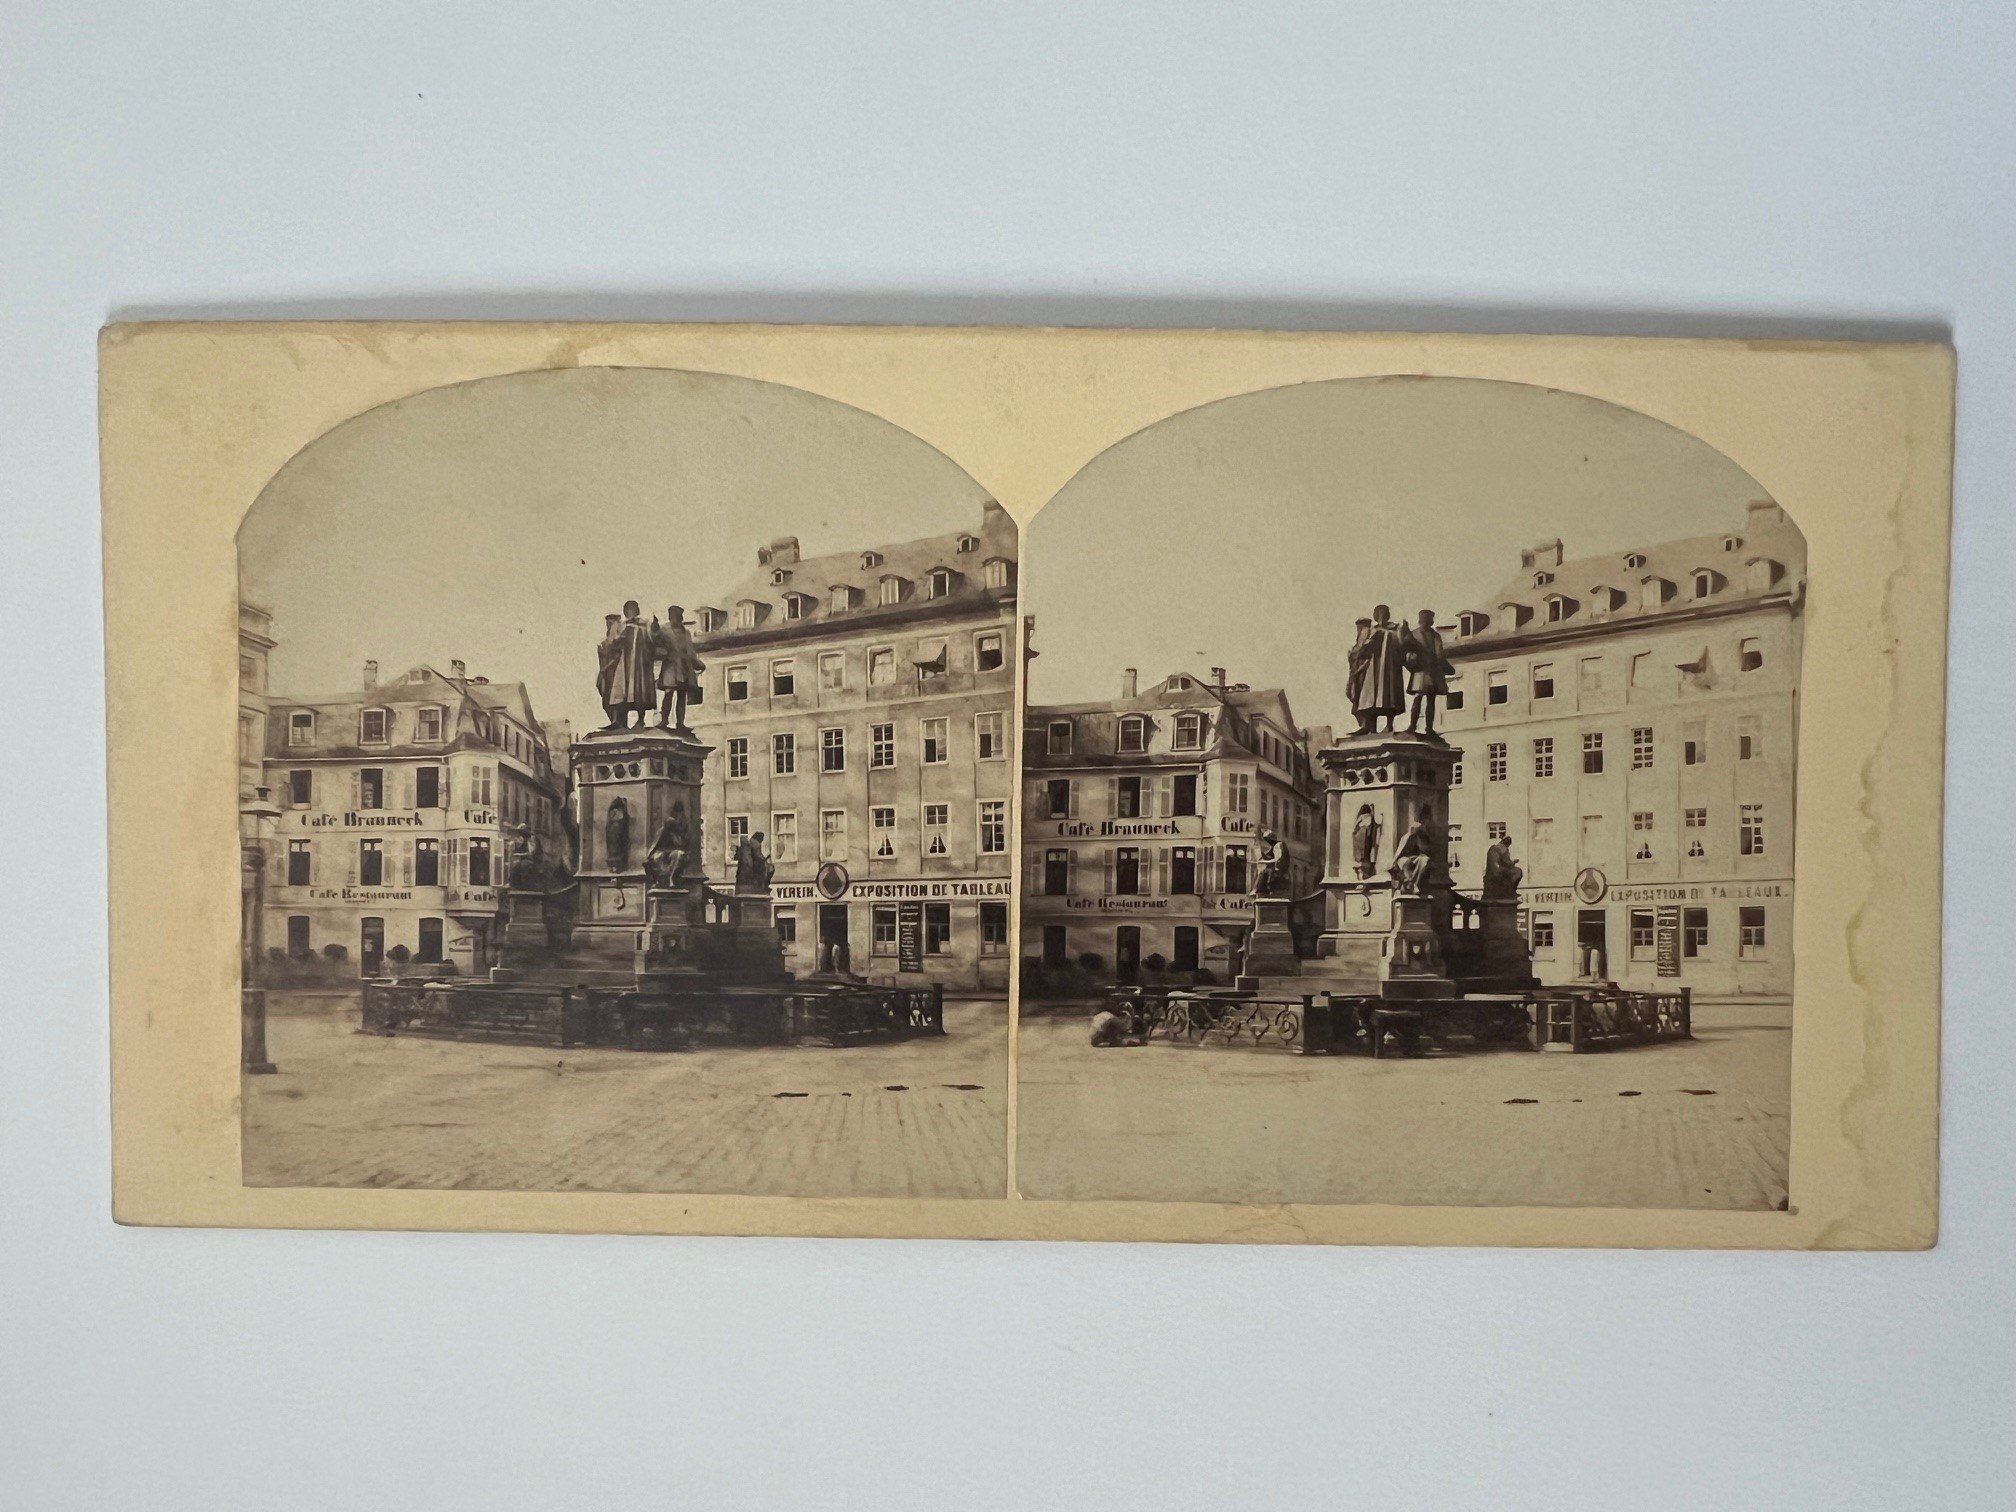 Stereobild, Unbekannter Fotograf, Frankfurt, Gutenberg-Denkmal, ca. 1864. (Taunus-Rhein-Main - Regionalgeschichtliche Sammlung Dr. Stefan Naas CC BY-NC-SA)